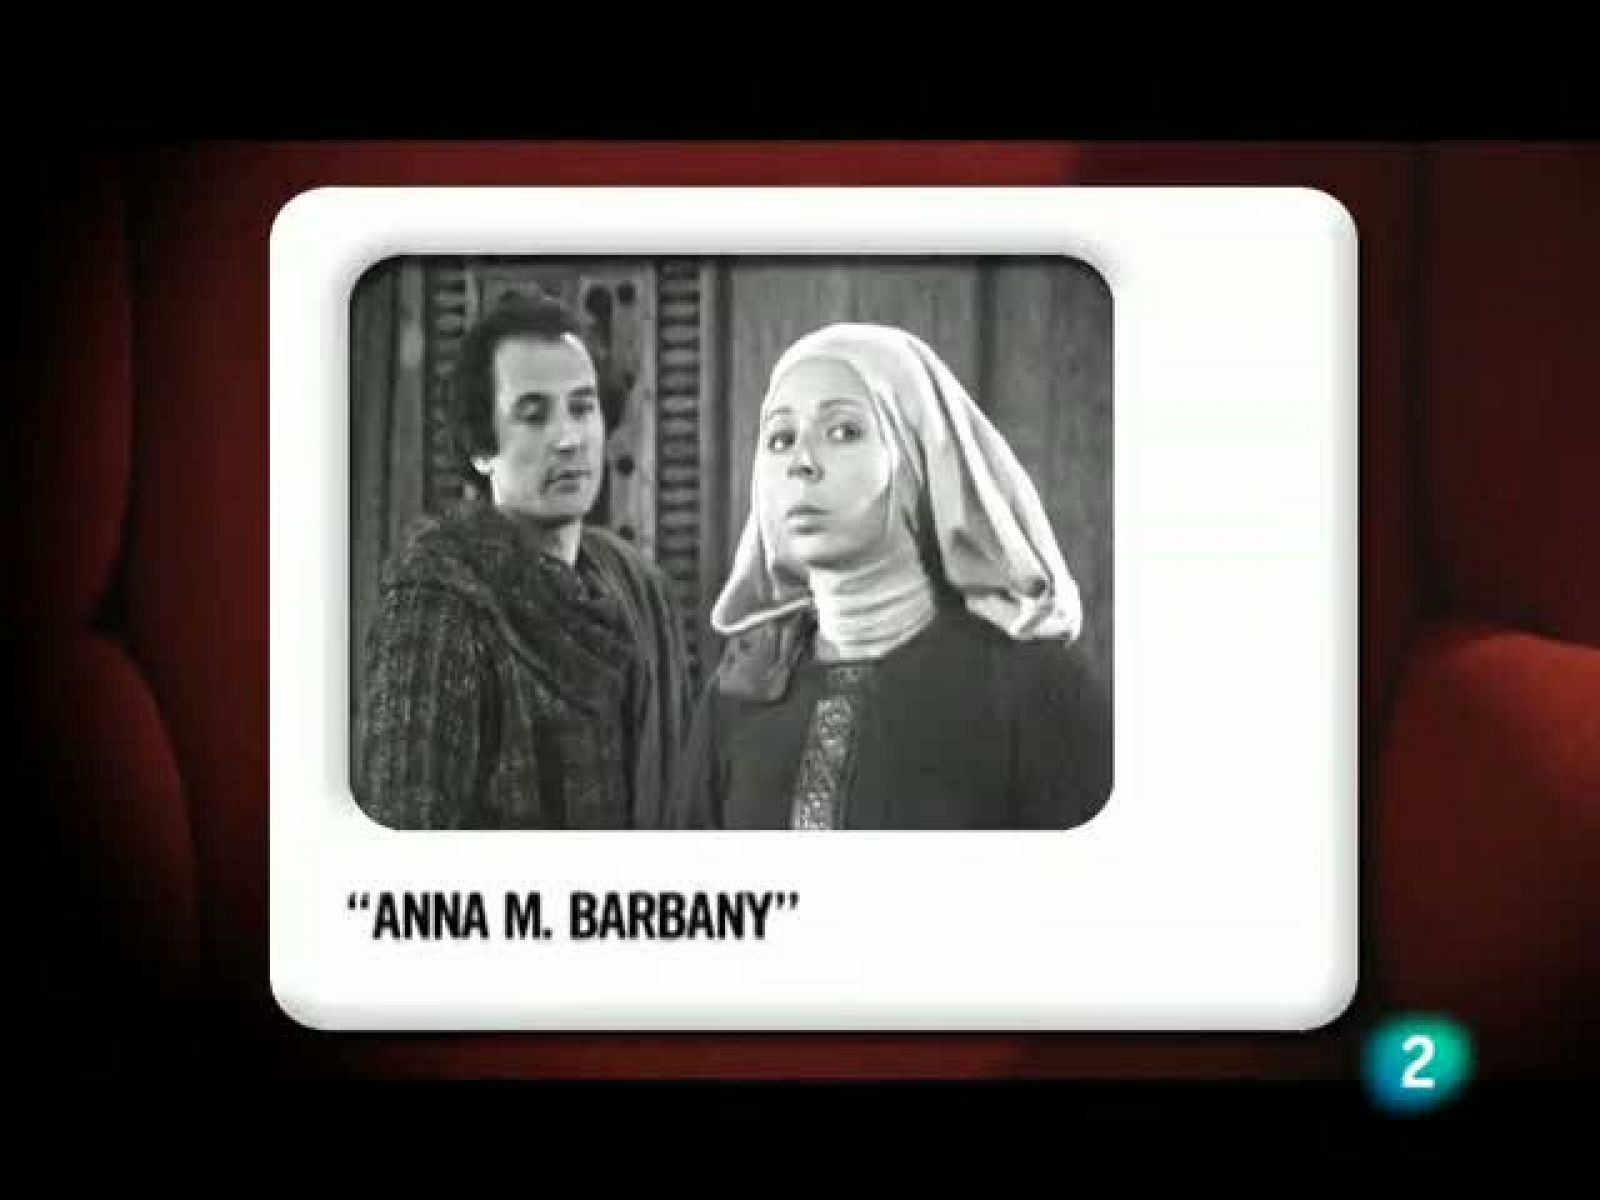 Memòries de la tele -  L'actriu Anna M. Barbany i Los Morancos